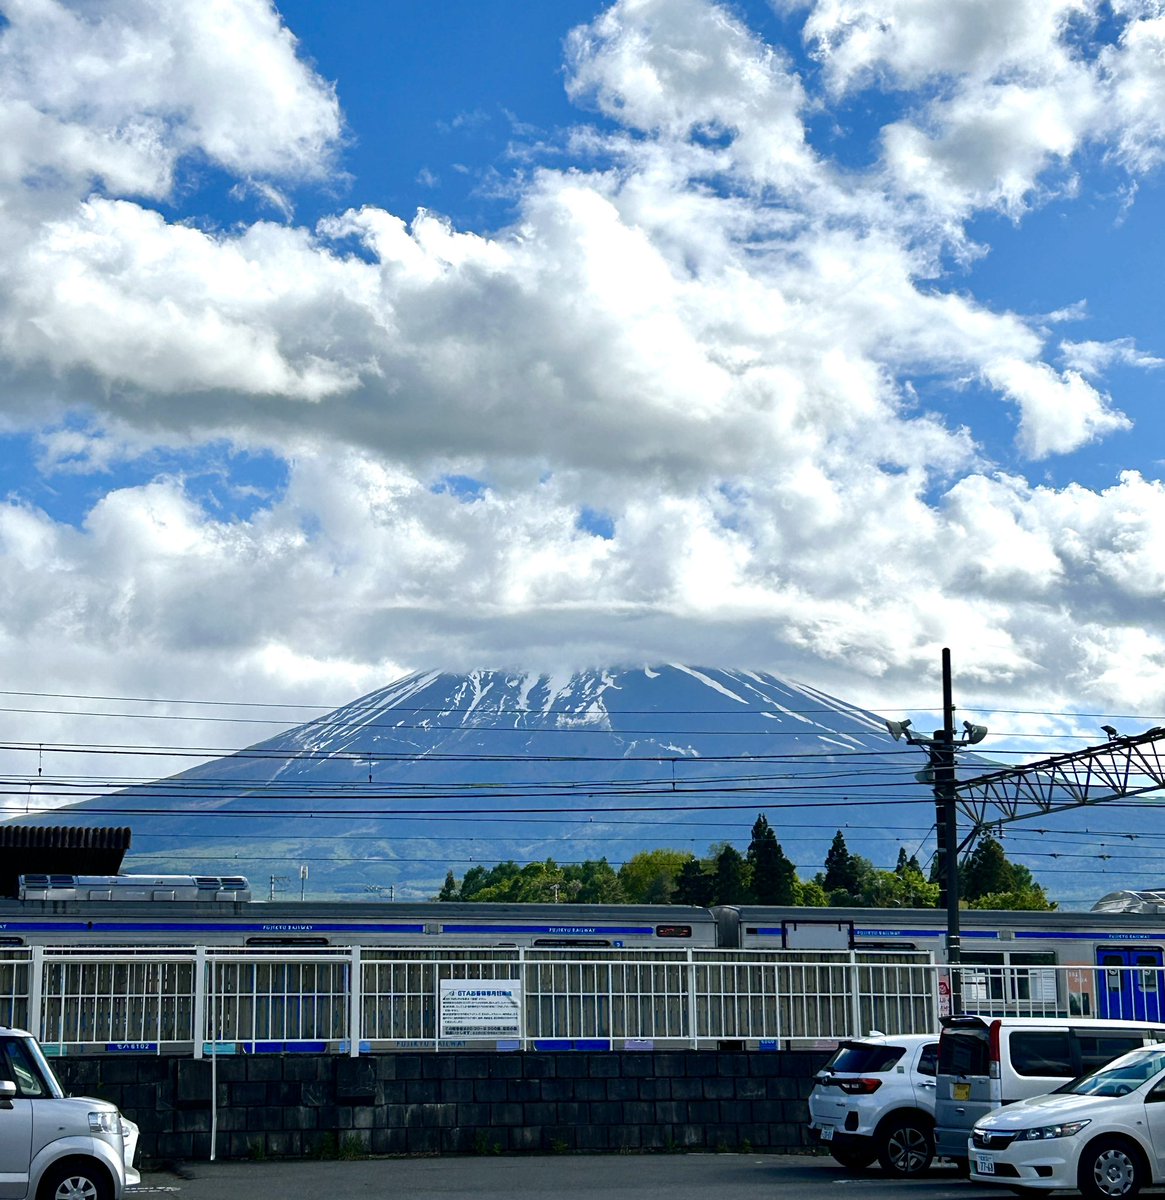 5月9日（木）
午前中には雨は止み、
先程から青空＋富士山見えてきました☻
今朝は空気が冷んやり寒かったです。
富士山では雪がふったようですꢀ
.
It was chilly and cold today. It seems like it snowed on Mt Fuji.
#富士吉田 #fujiyoshida